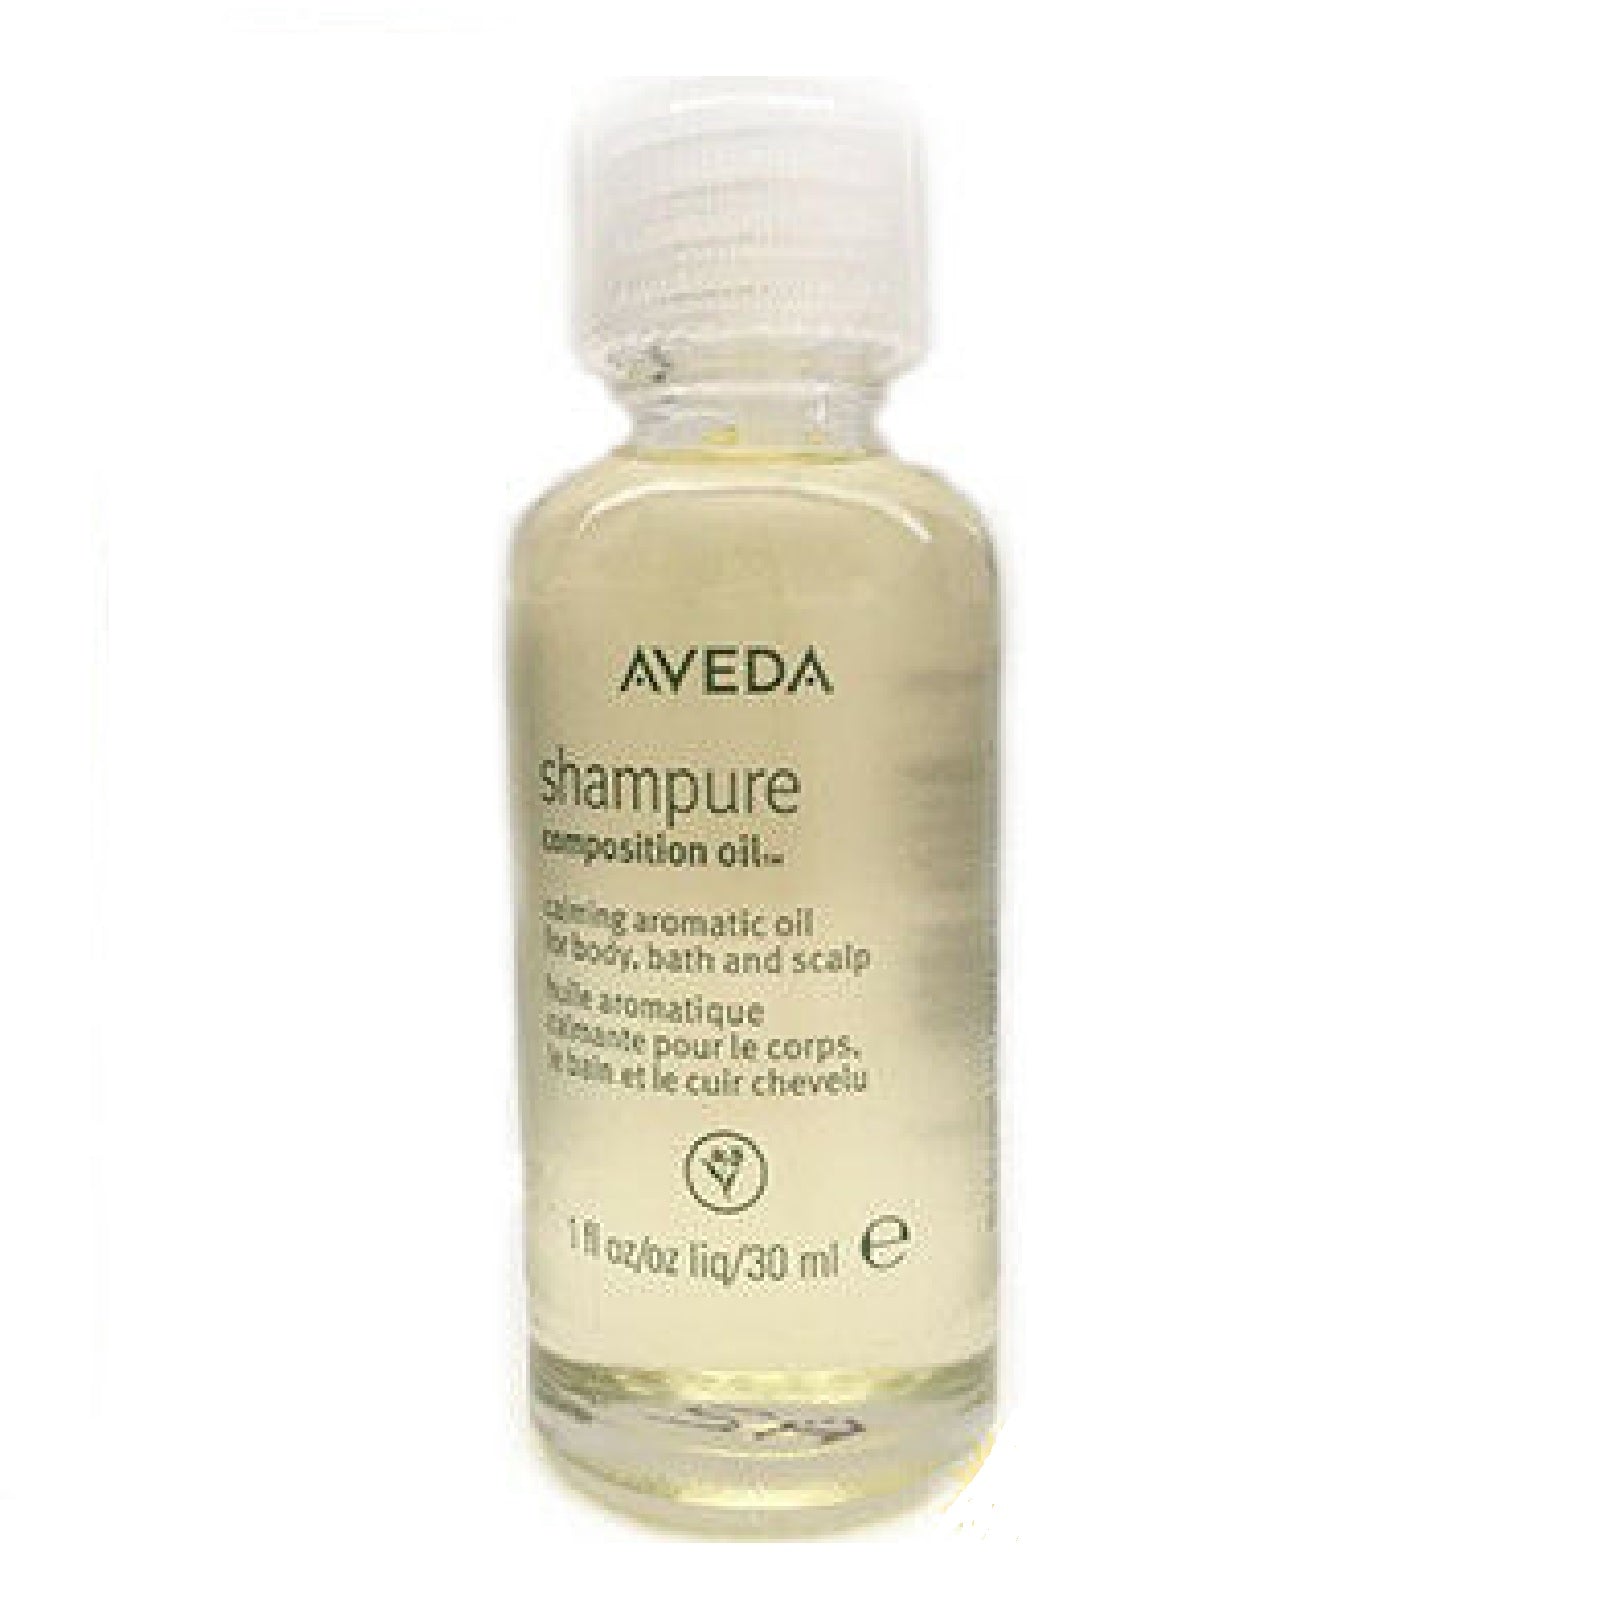 AVEDA new SHAMPURE Composition Oil bath body oil smaller size 30ml 1oz